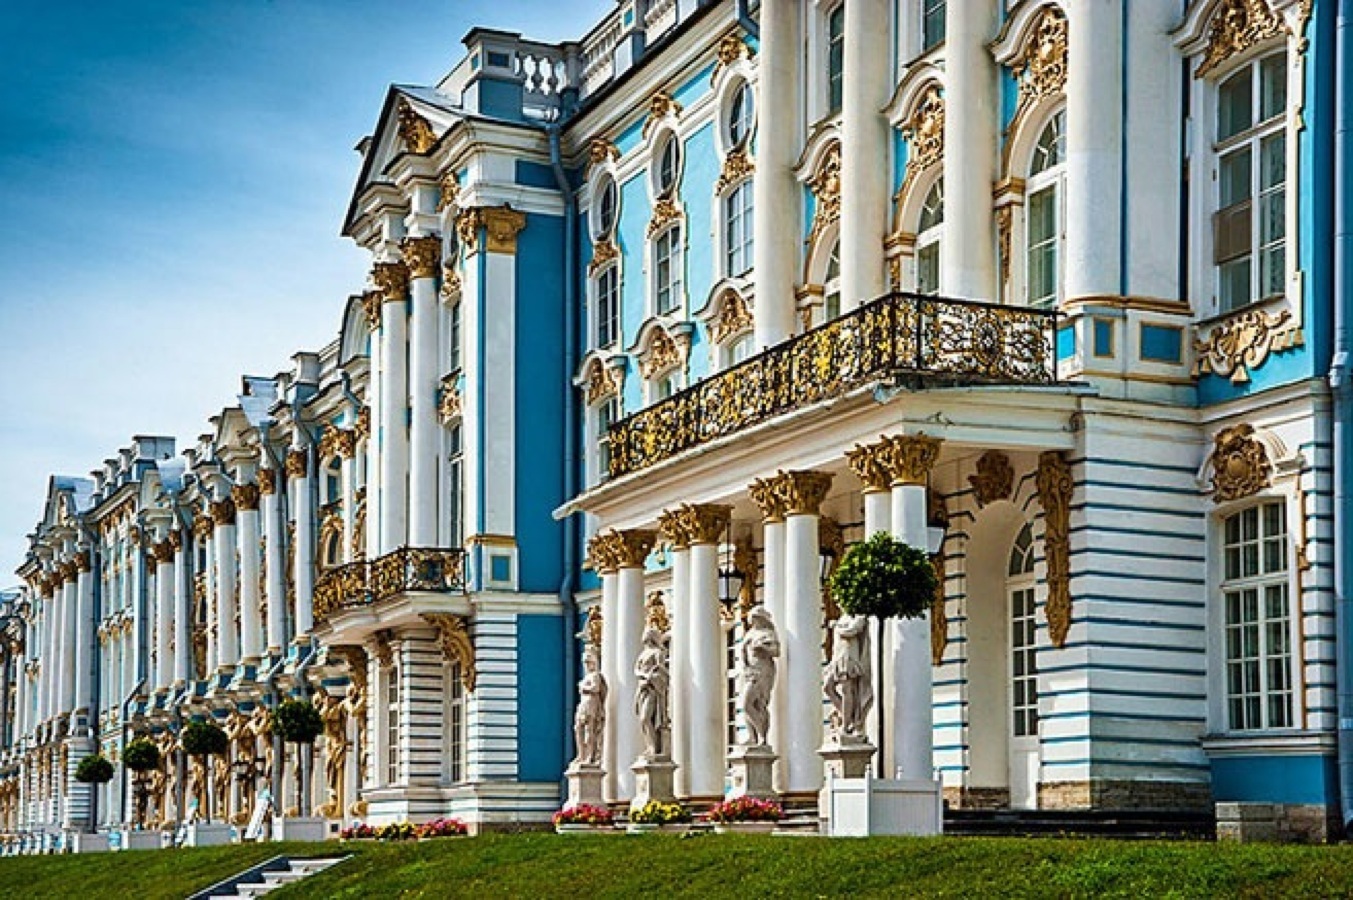 Русский архитектор царское село